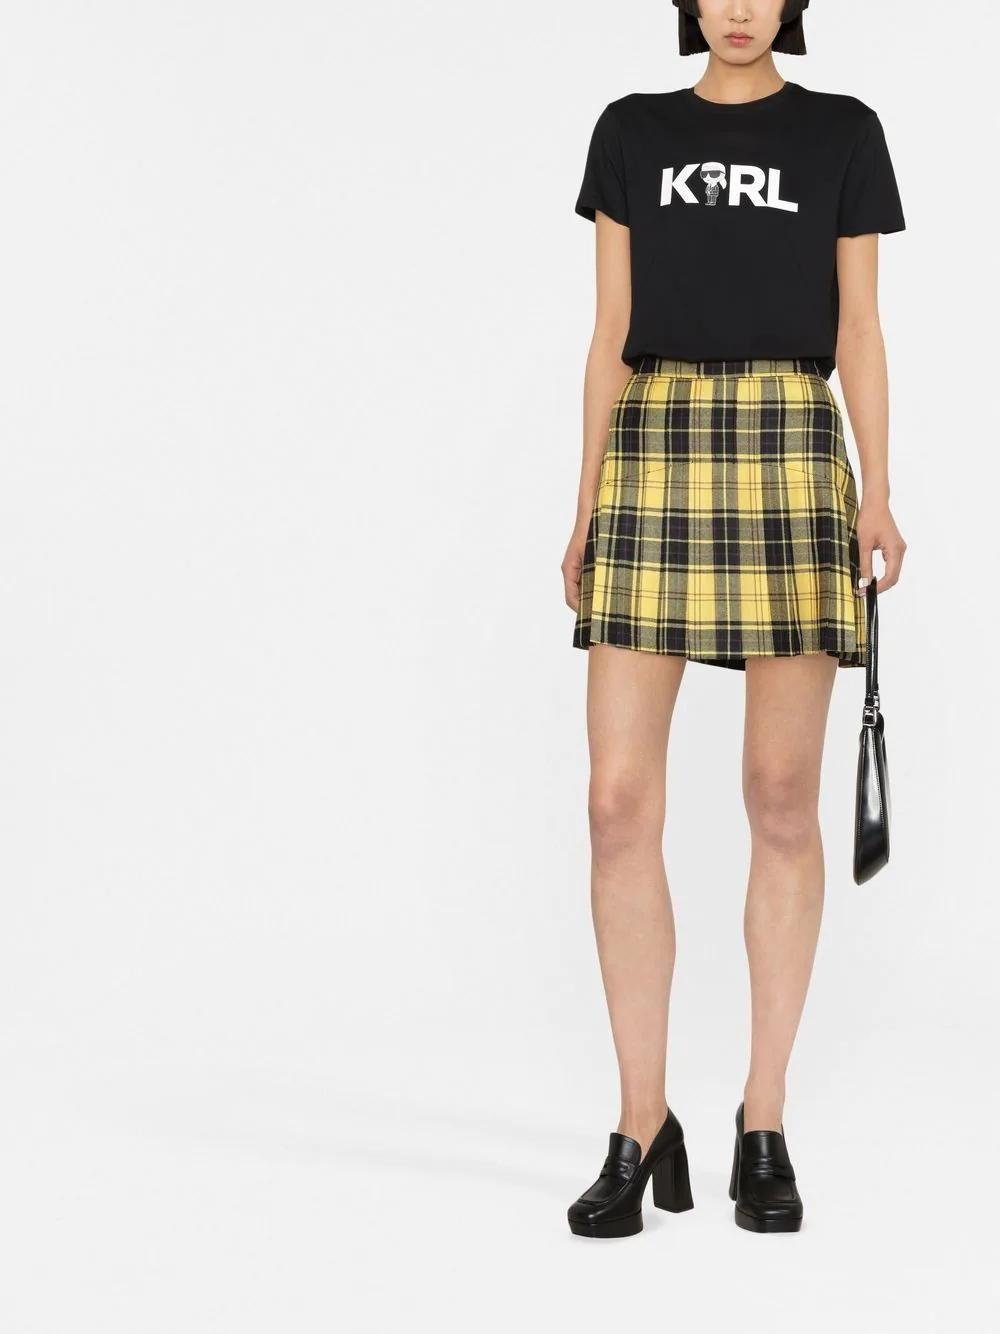 Camiseta Karl Lagerfeld negra ikonik 2.0 karl logo